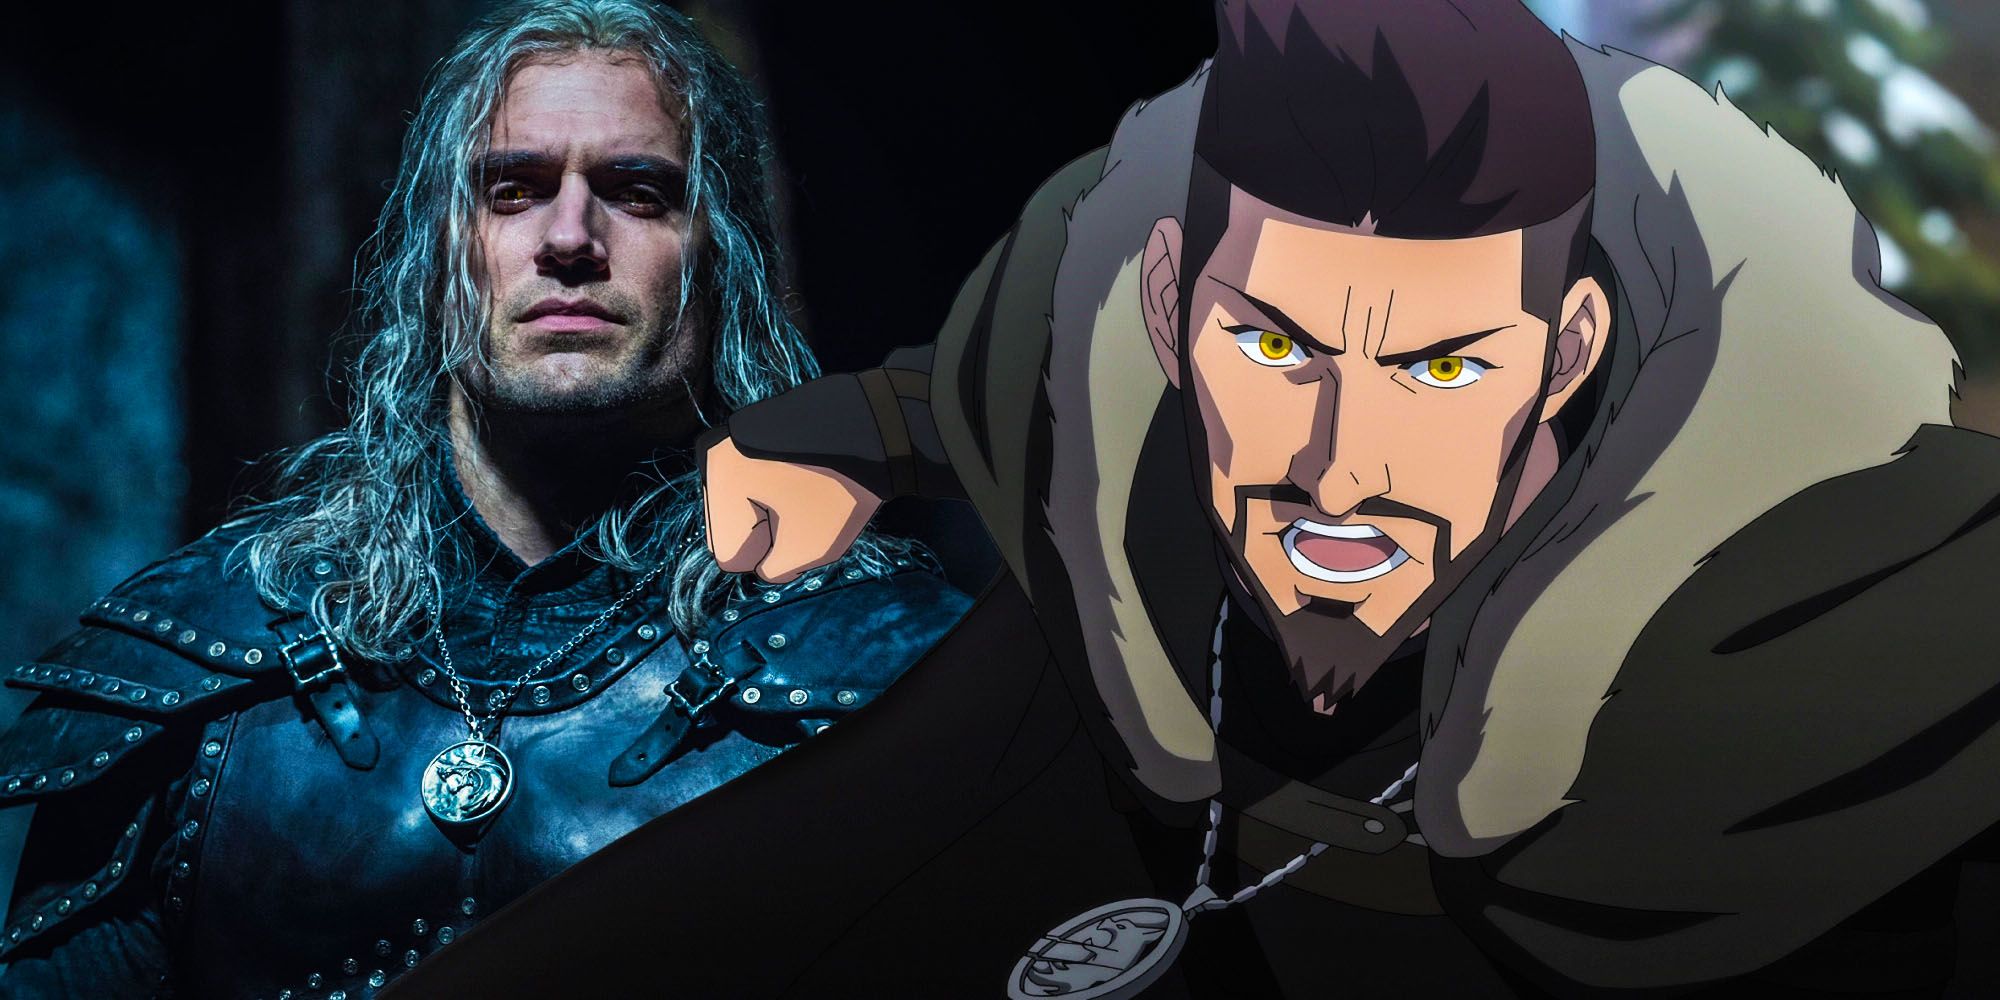 Split image showing Geralt and Vesemir